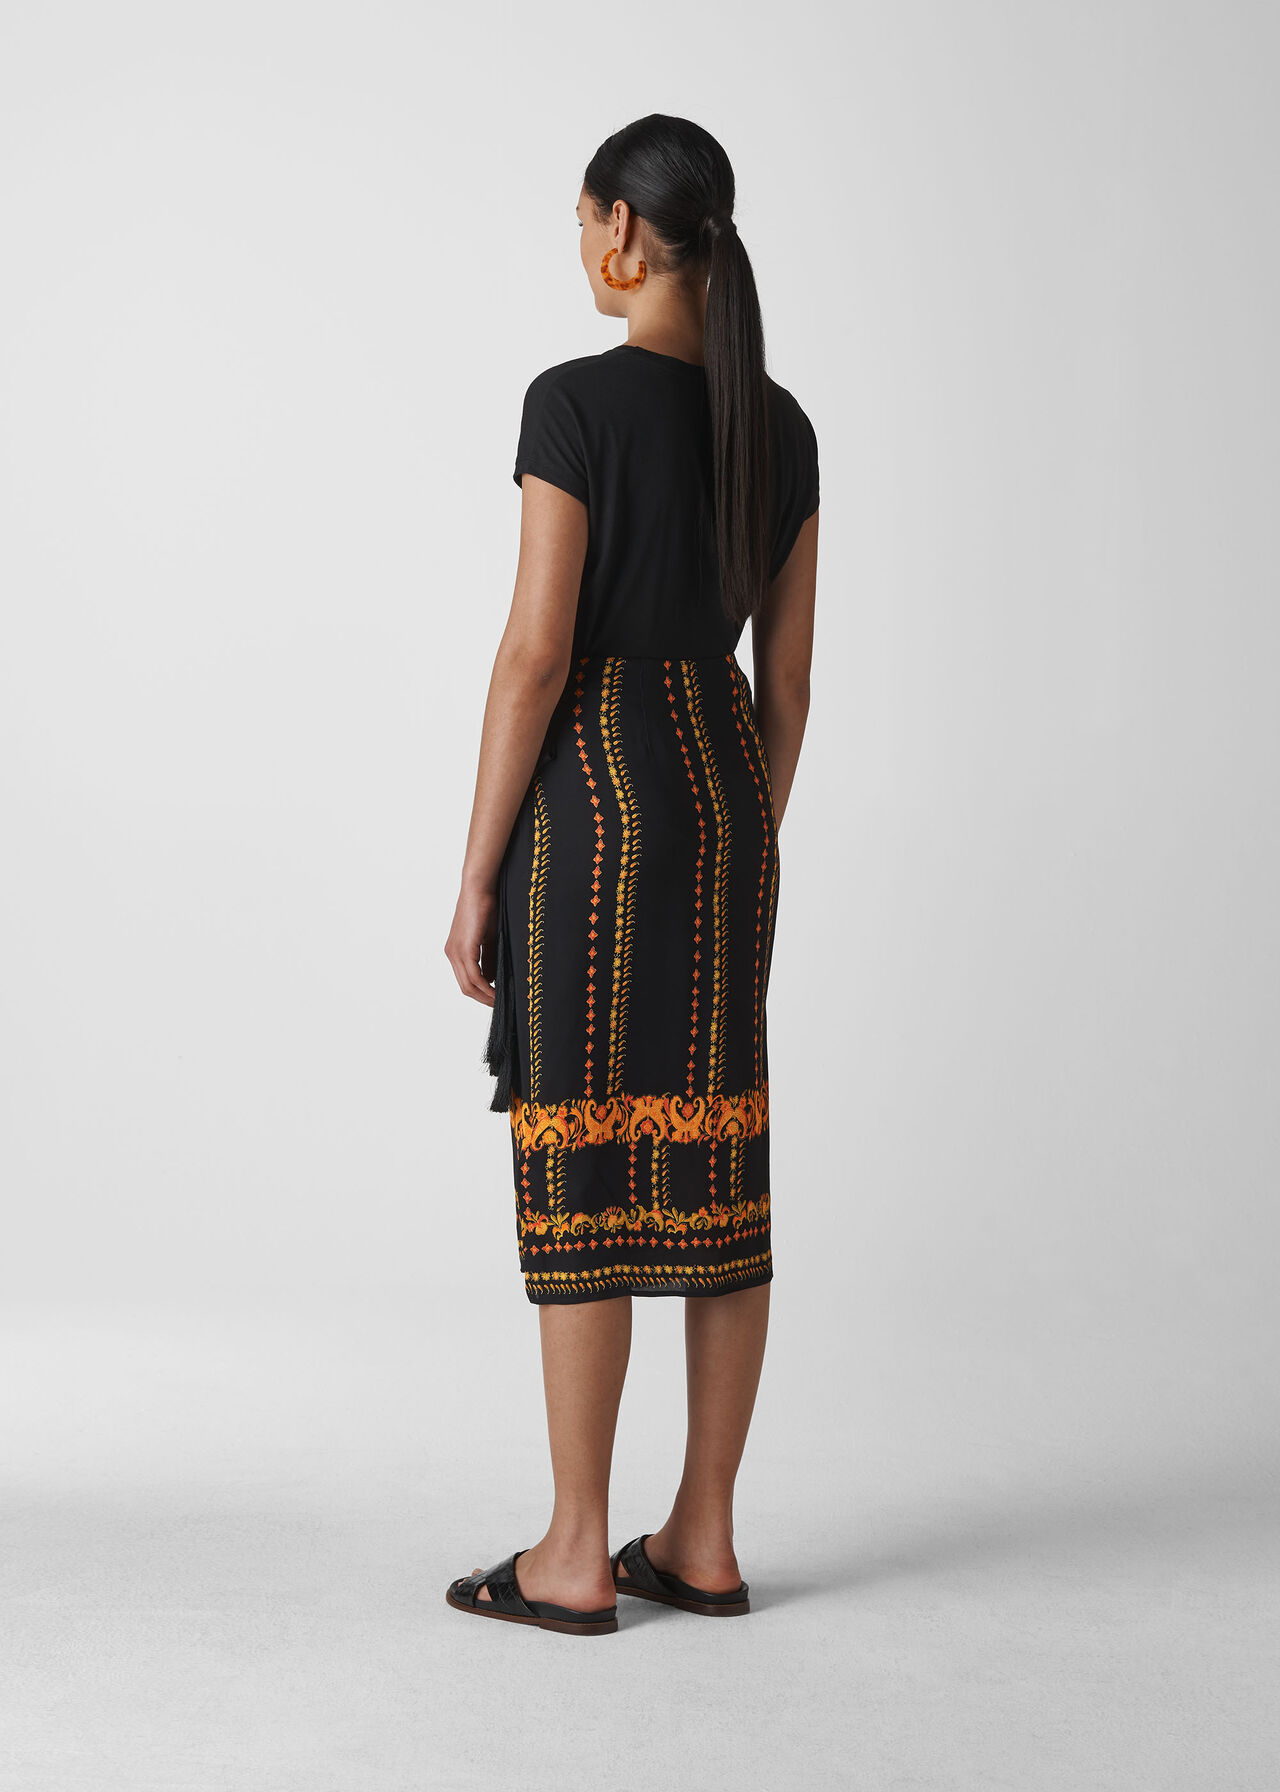 Paisley Scarf Sarong Skirt Black/Multi